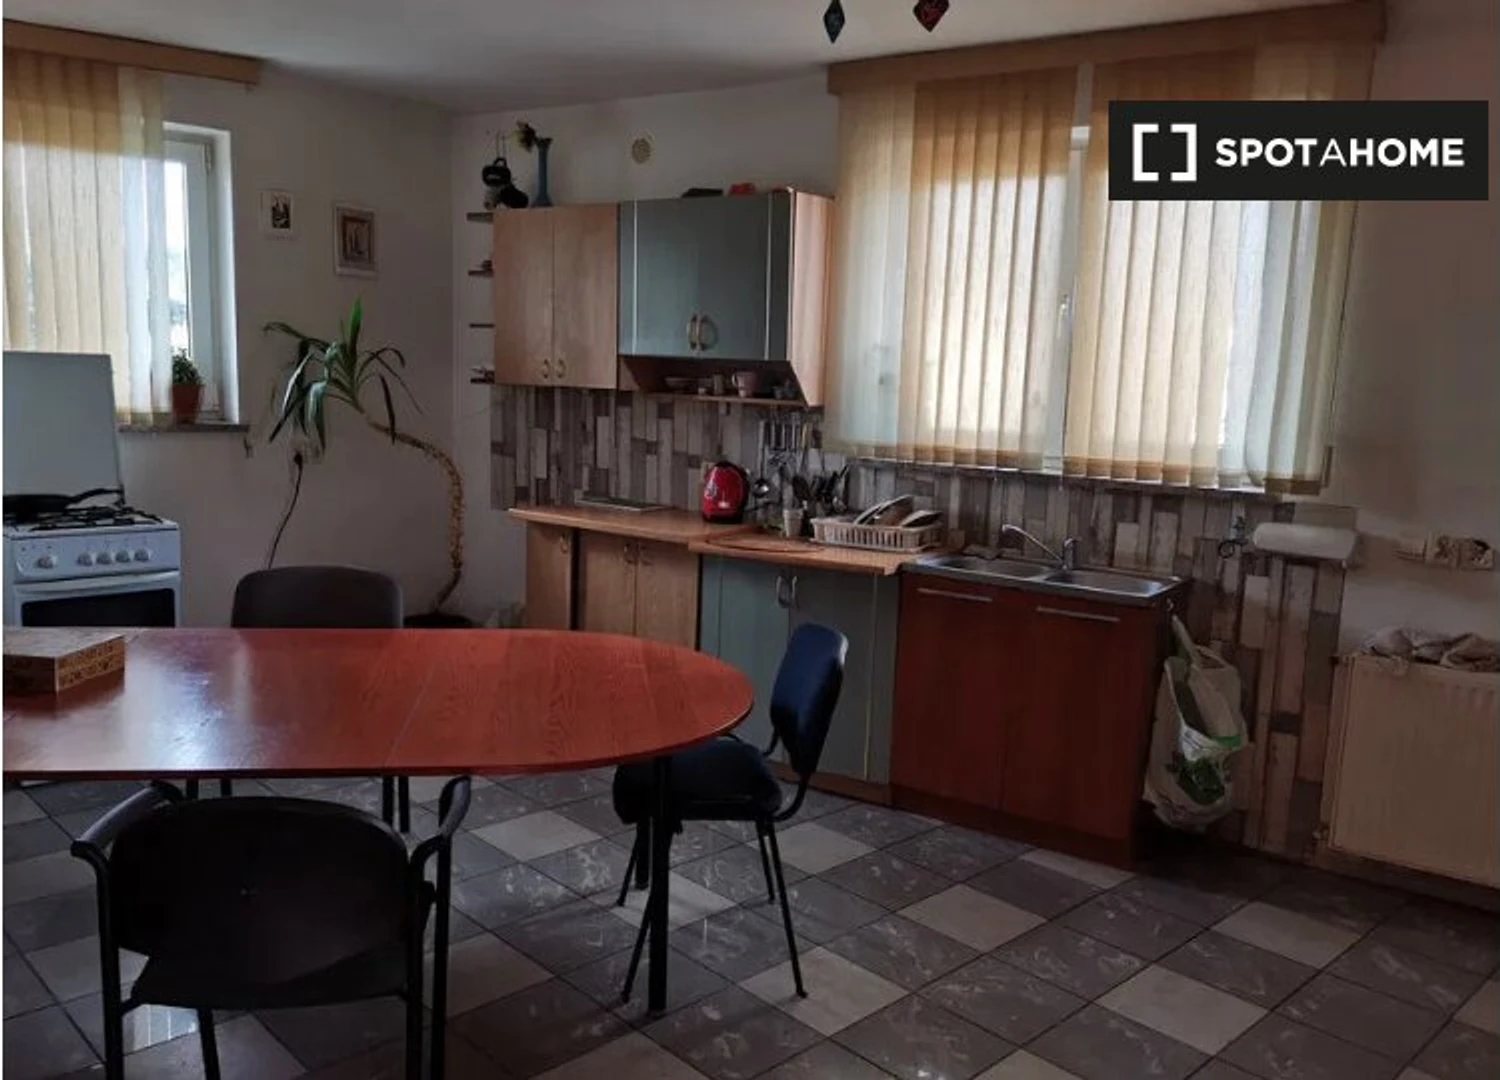 Alquiler de habitaciones por meses en Poznań